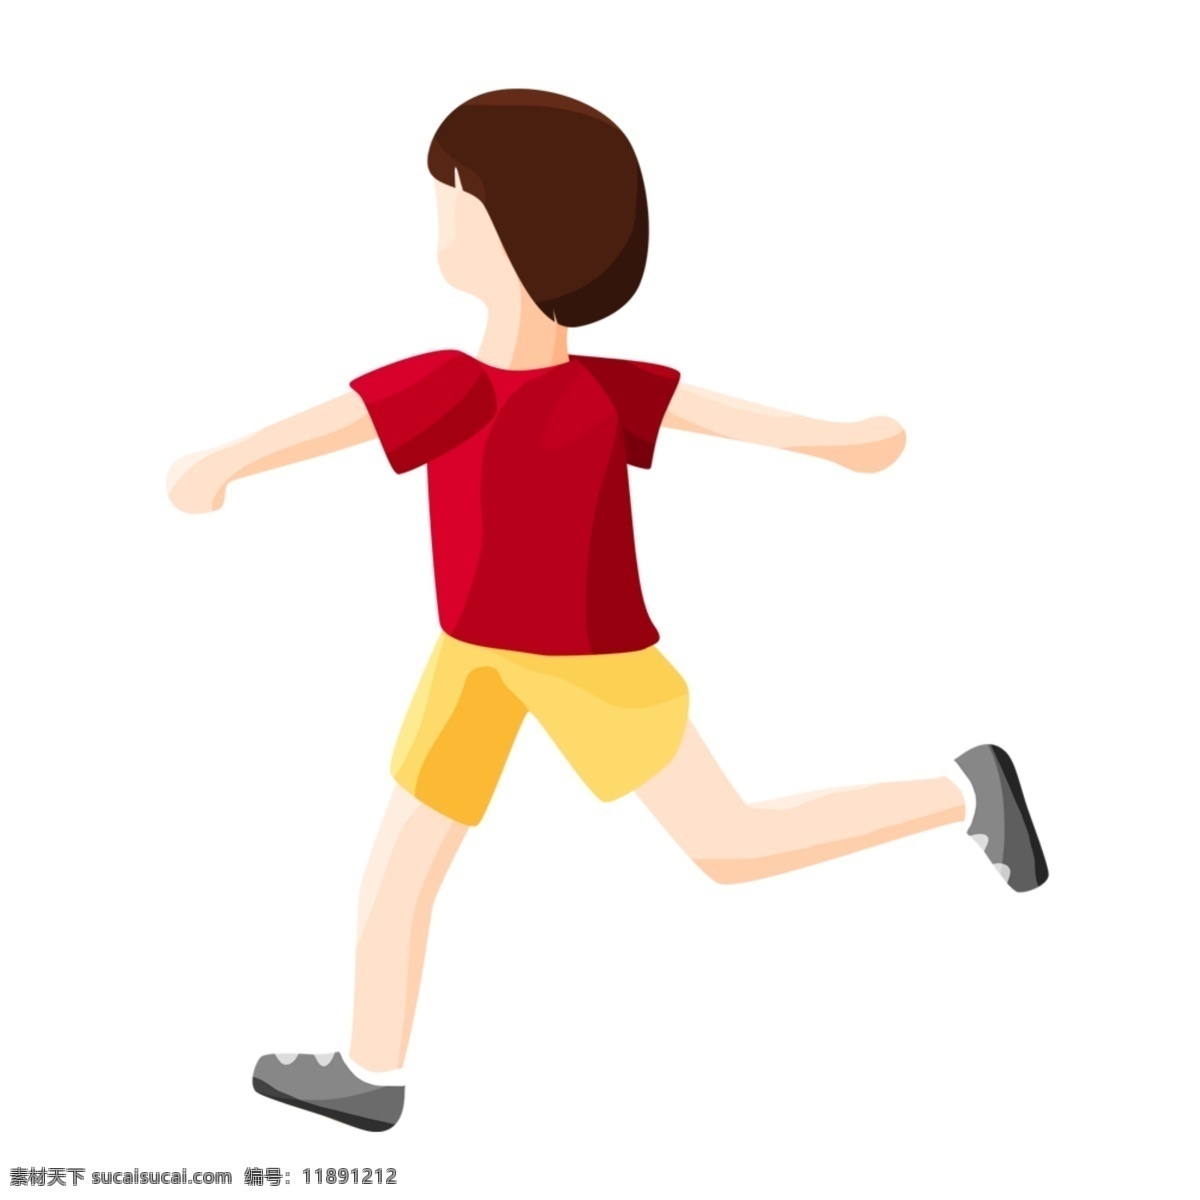 奔跑 人物 矢量 元素 奔跑的人物 红衣男孩 运动员 卡通人物 矢量人物 可爱人物画 人物动作 创意人物画